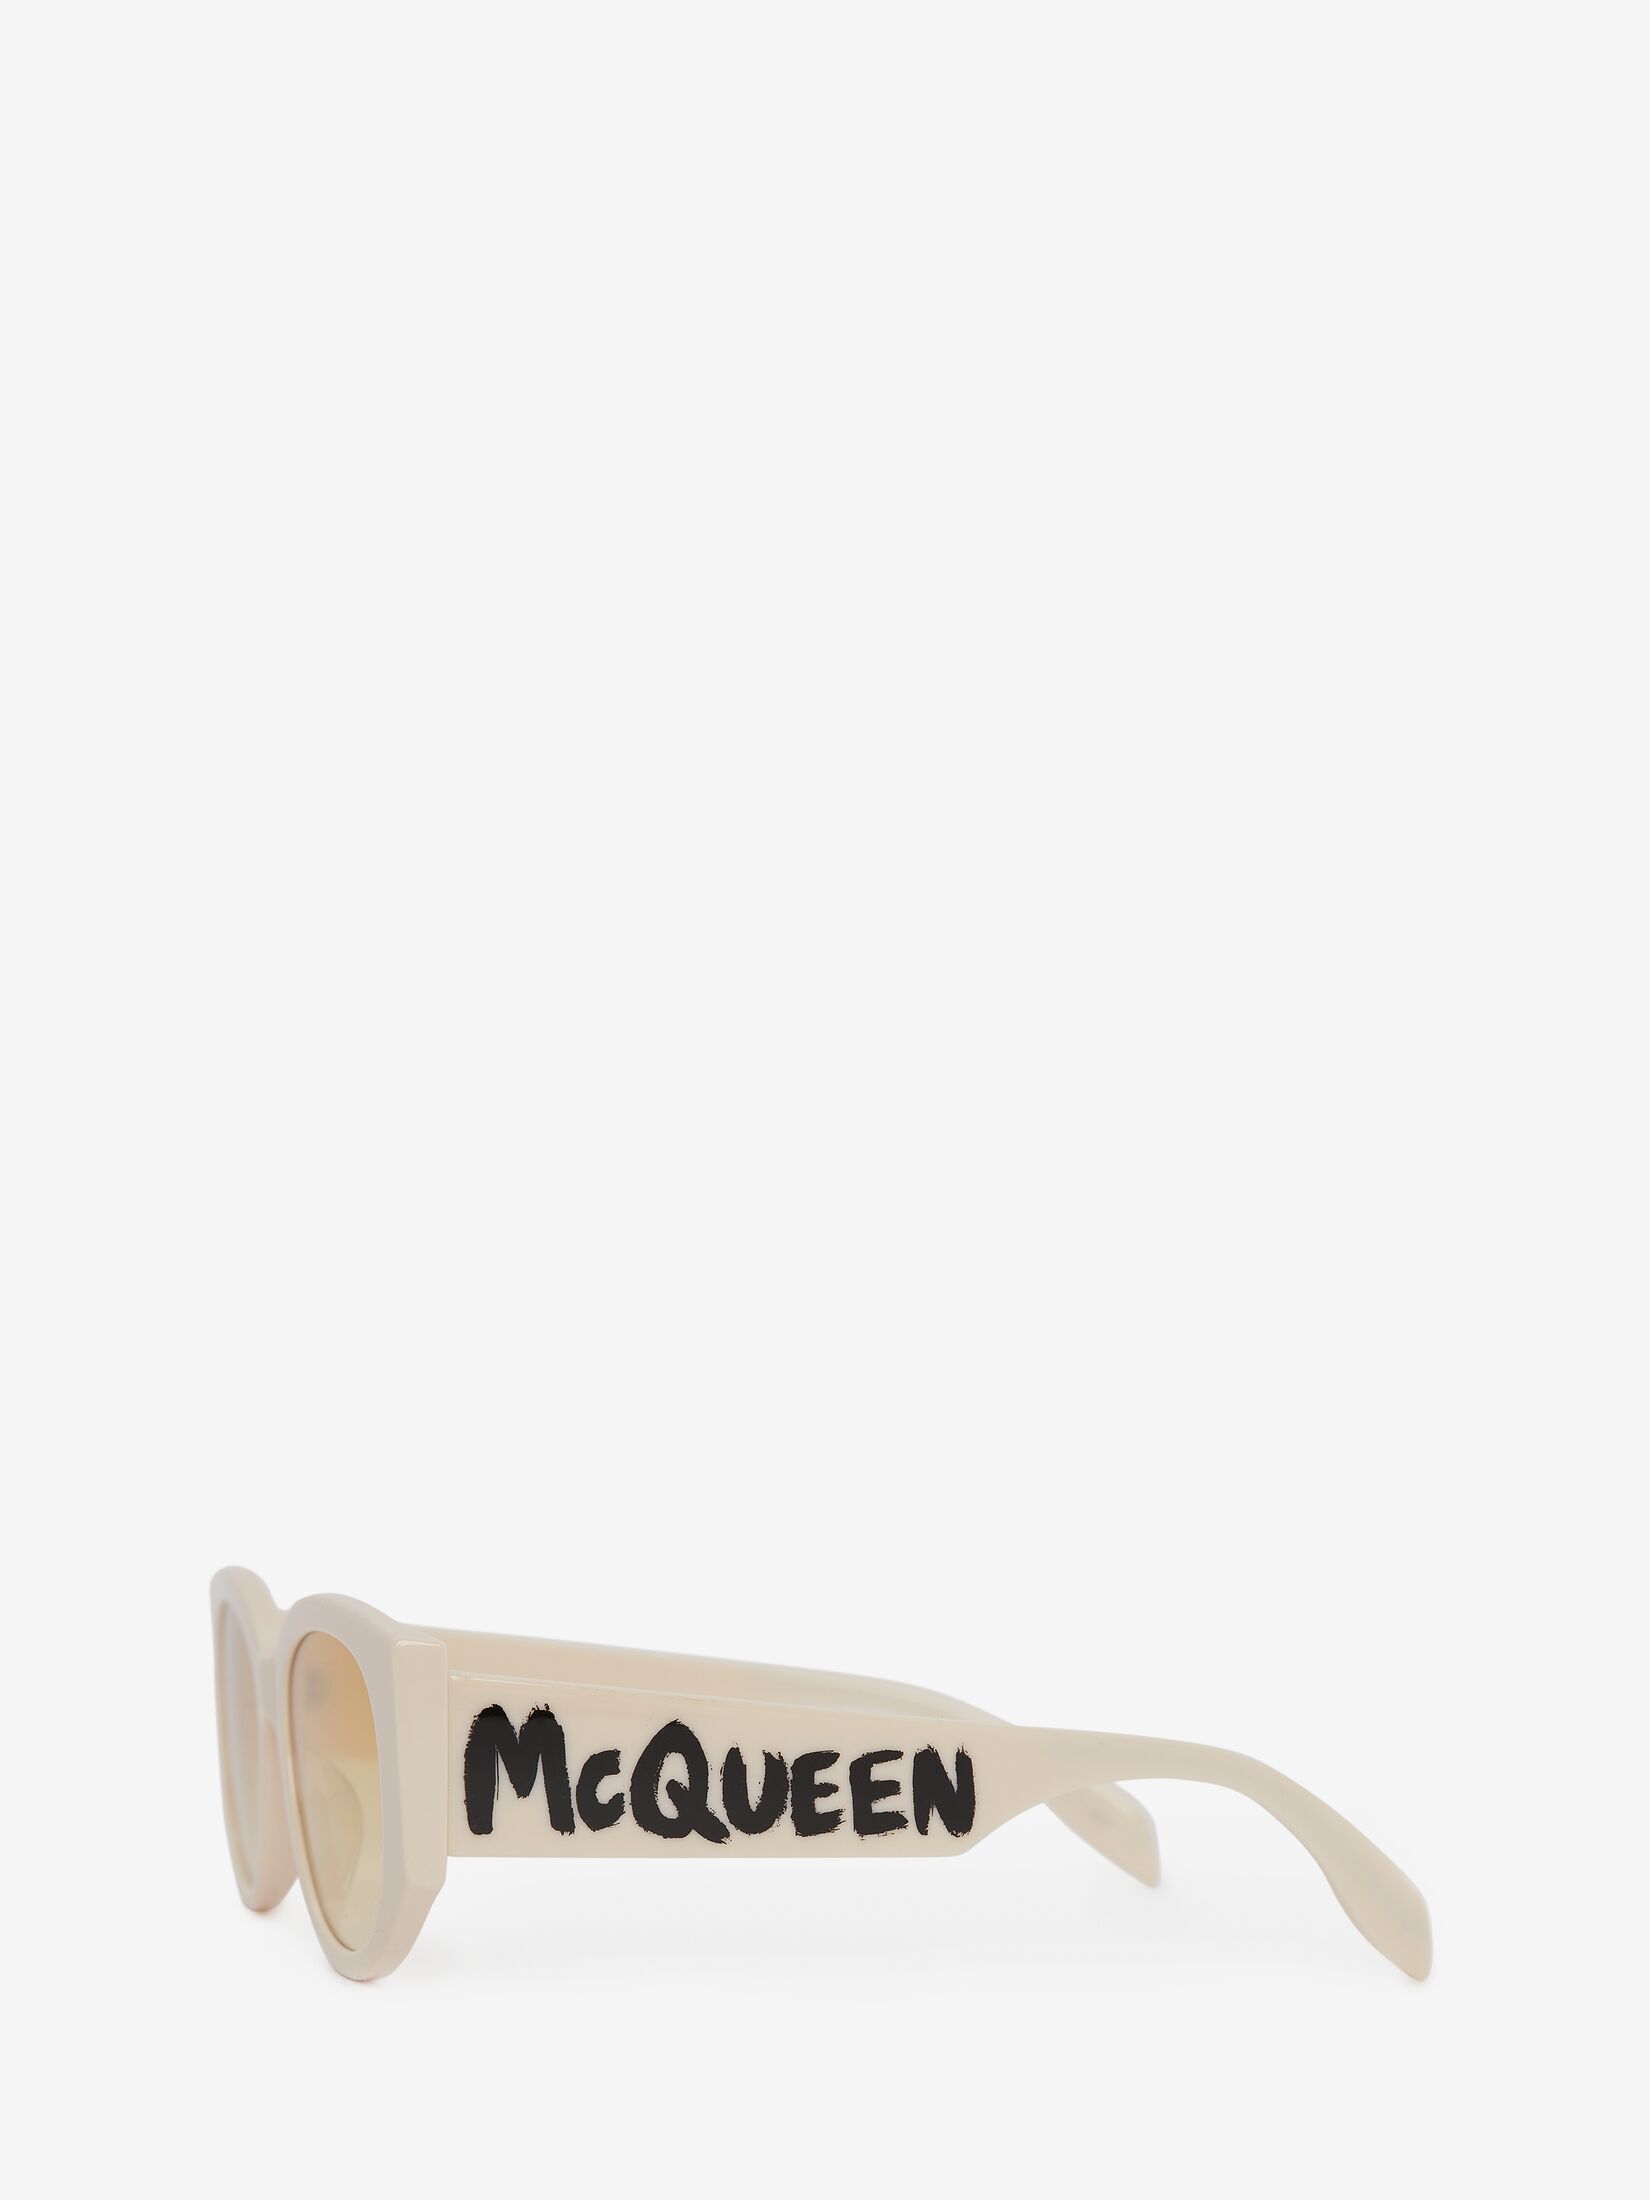 Ovale Sonnenbrille mit McQueen-Graffiti-Motiv